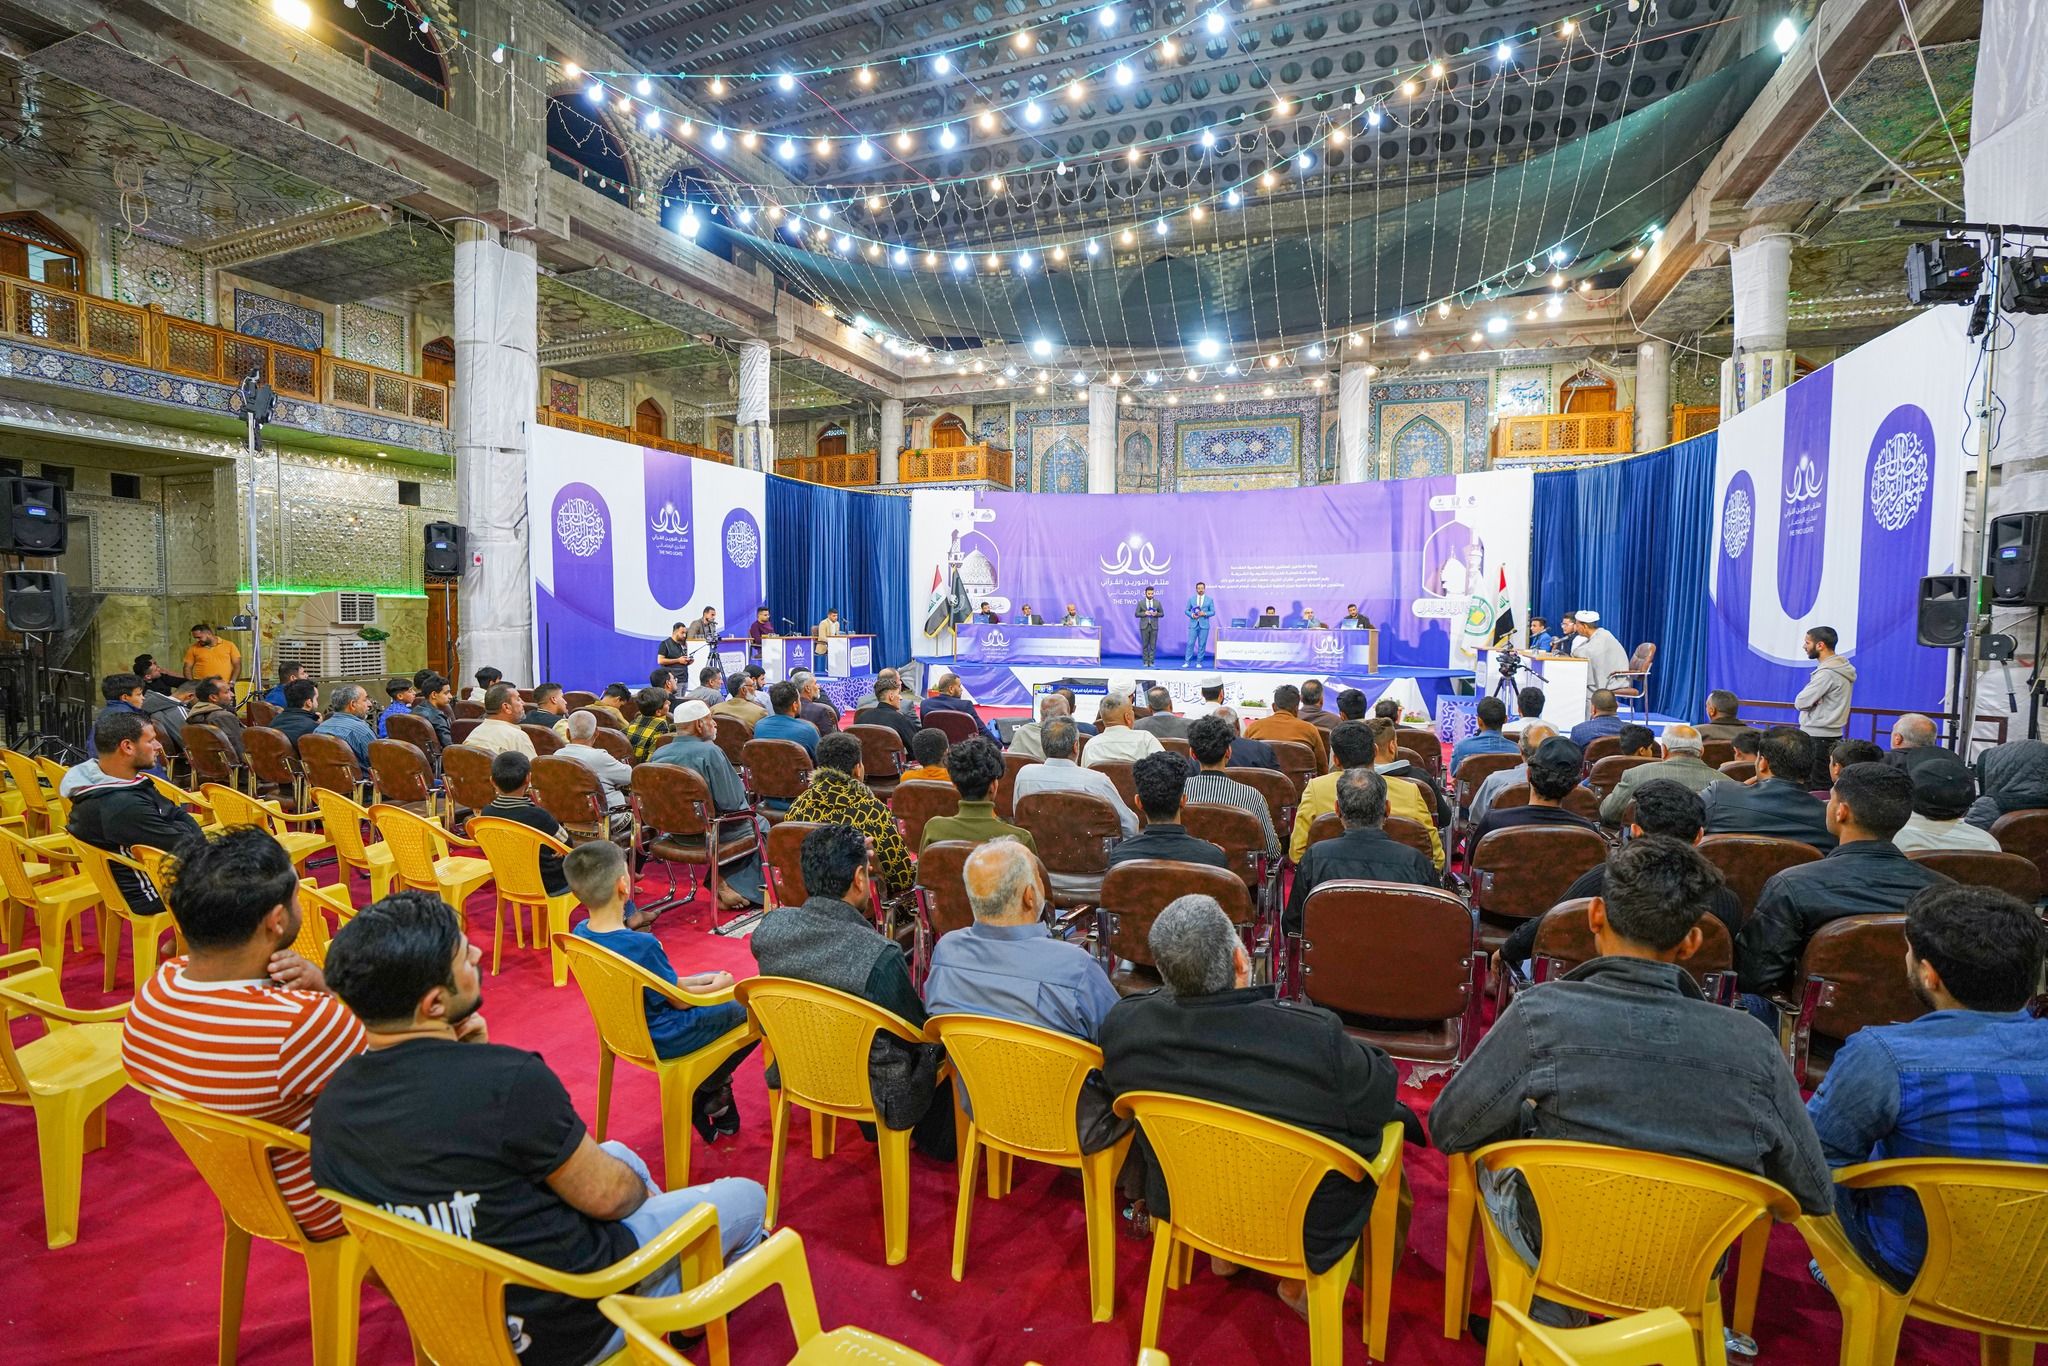 بمشاركة (14) فريقًا المسابقة القرآنية الفرقية في بابل تشهد تنافسًا كبيرًا من المشاركين